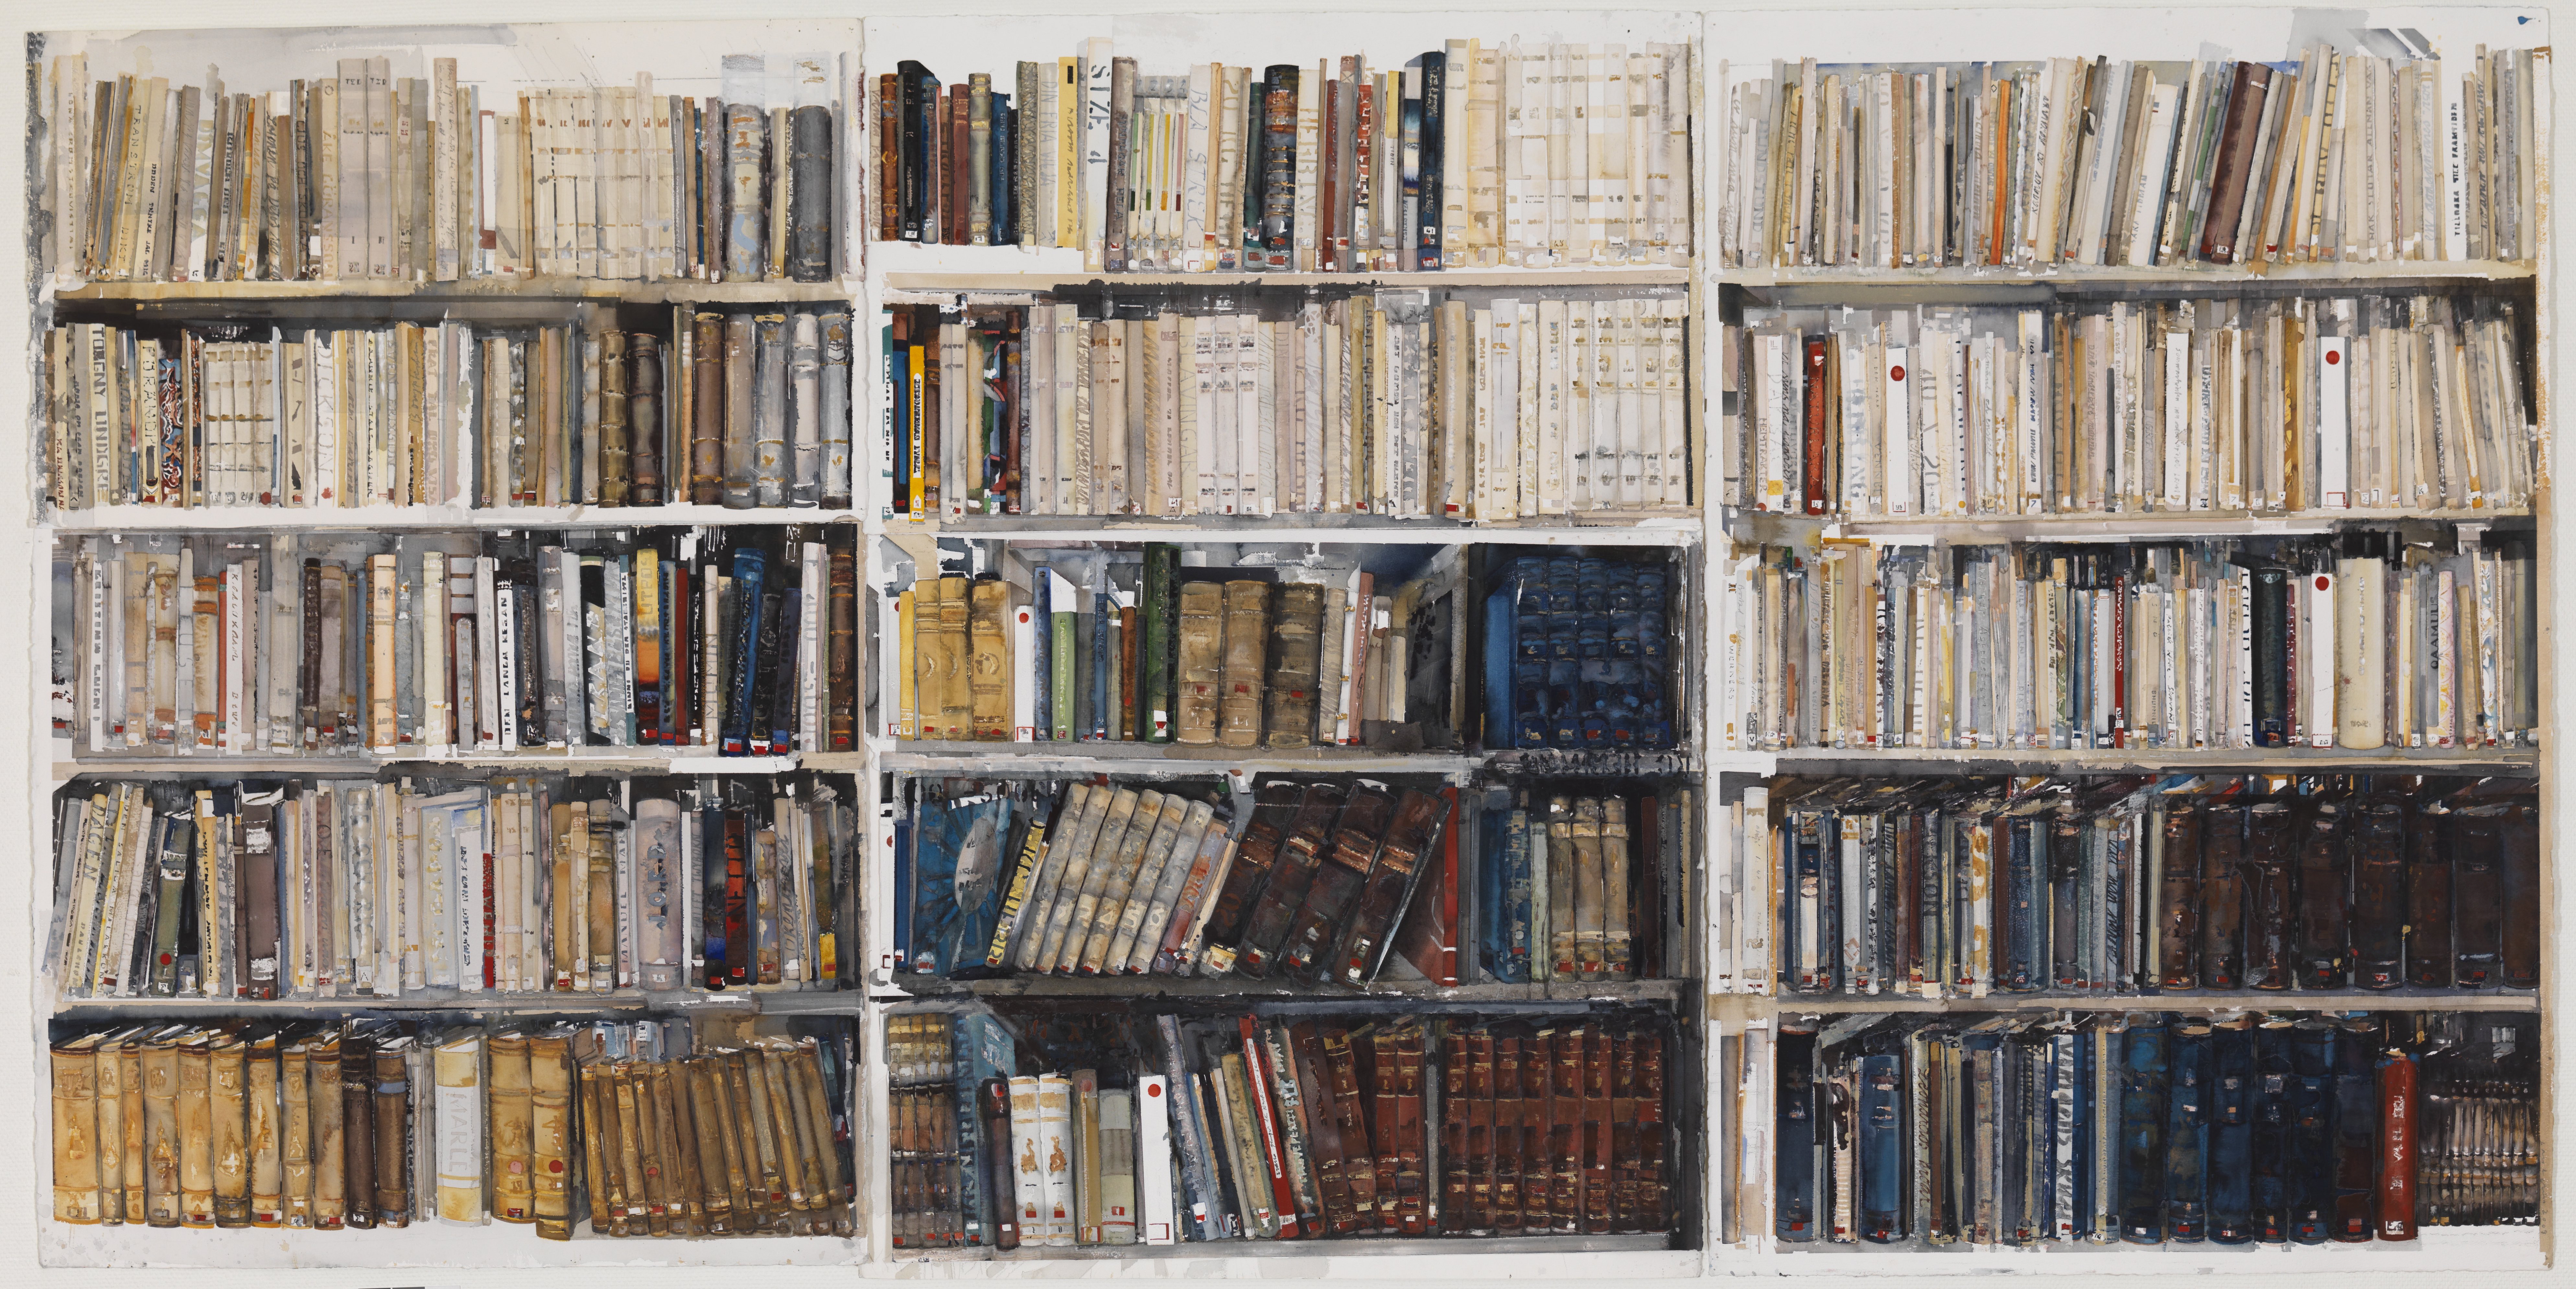 Tavla av ett bibliotek i akvarell av Lars Lerin, utställd på Liljevalchs.